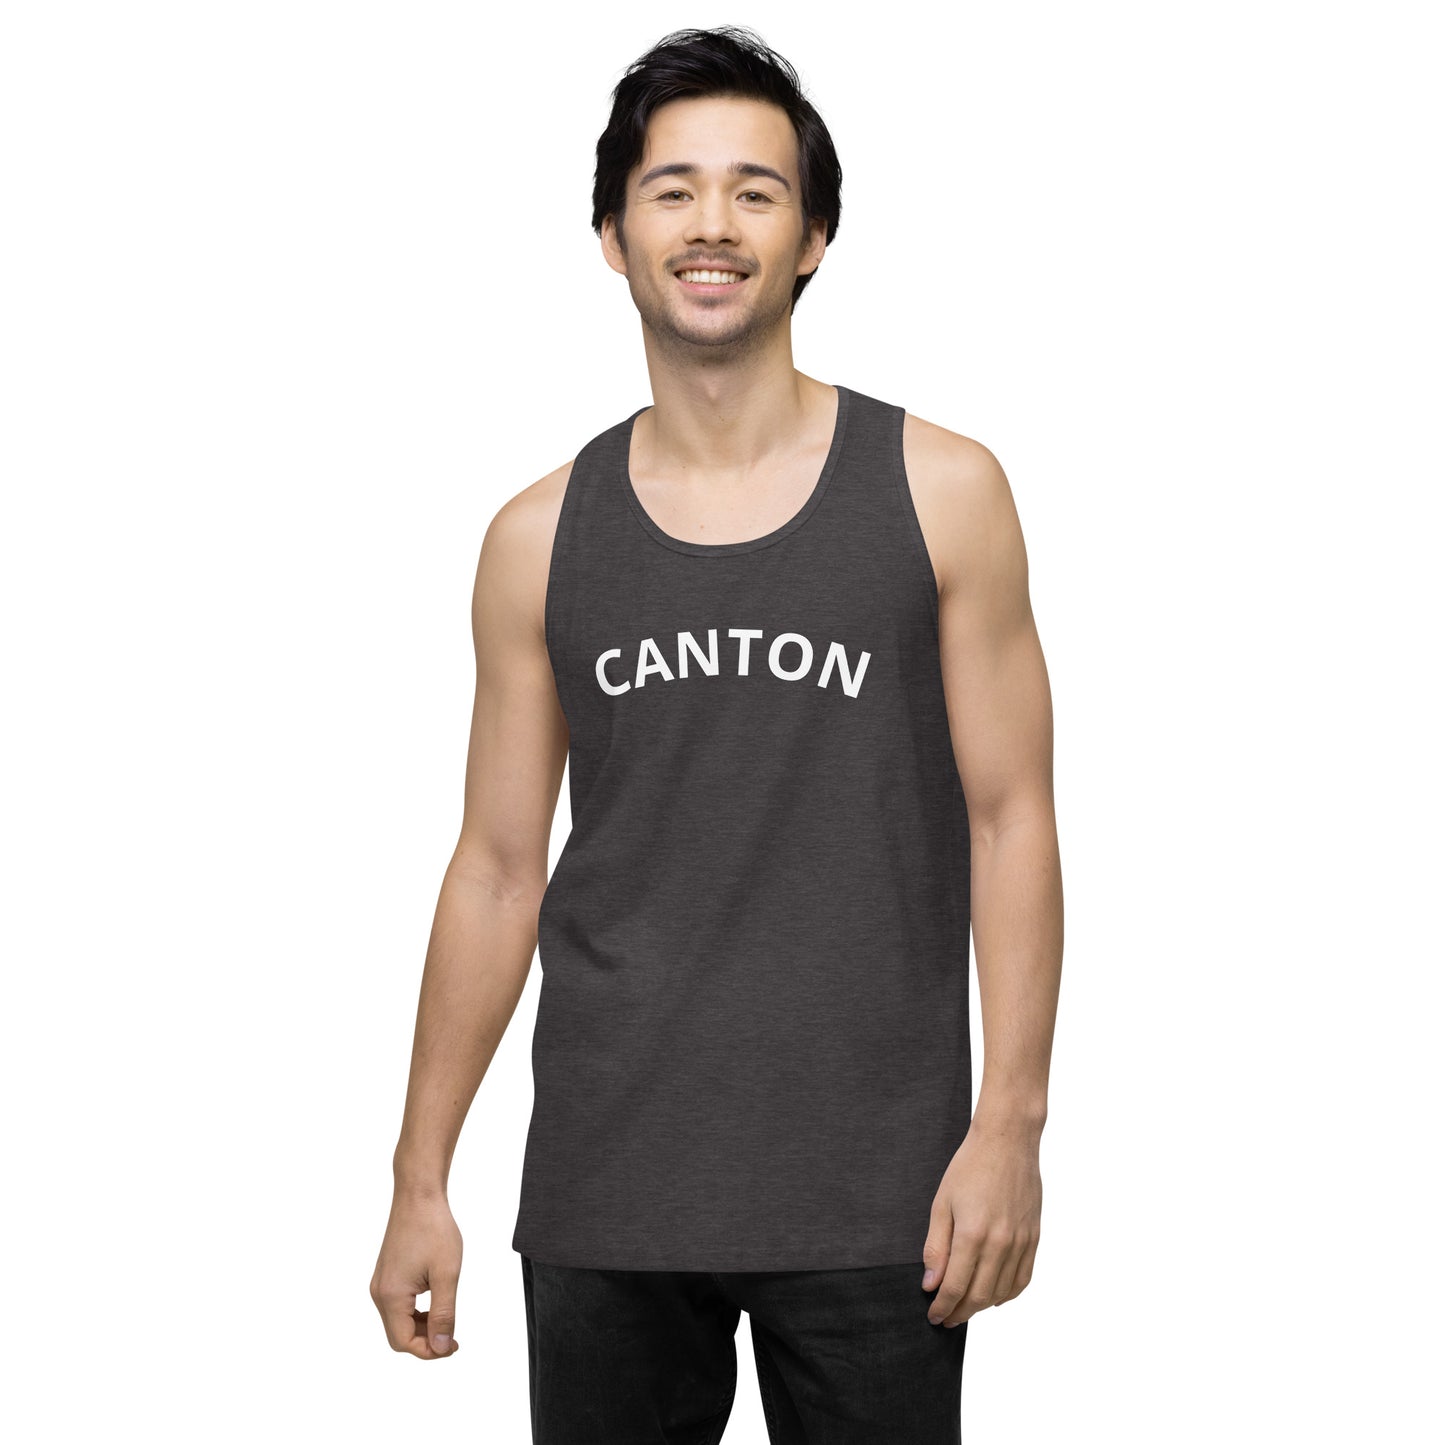 Canton men’s premium tank top